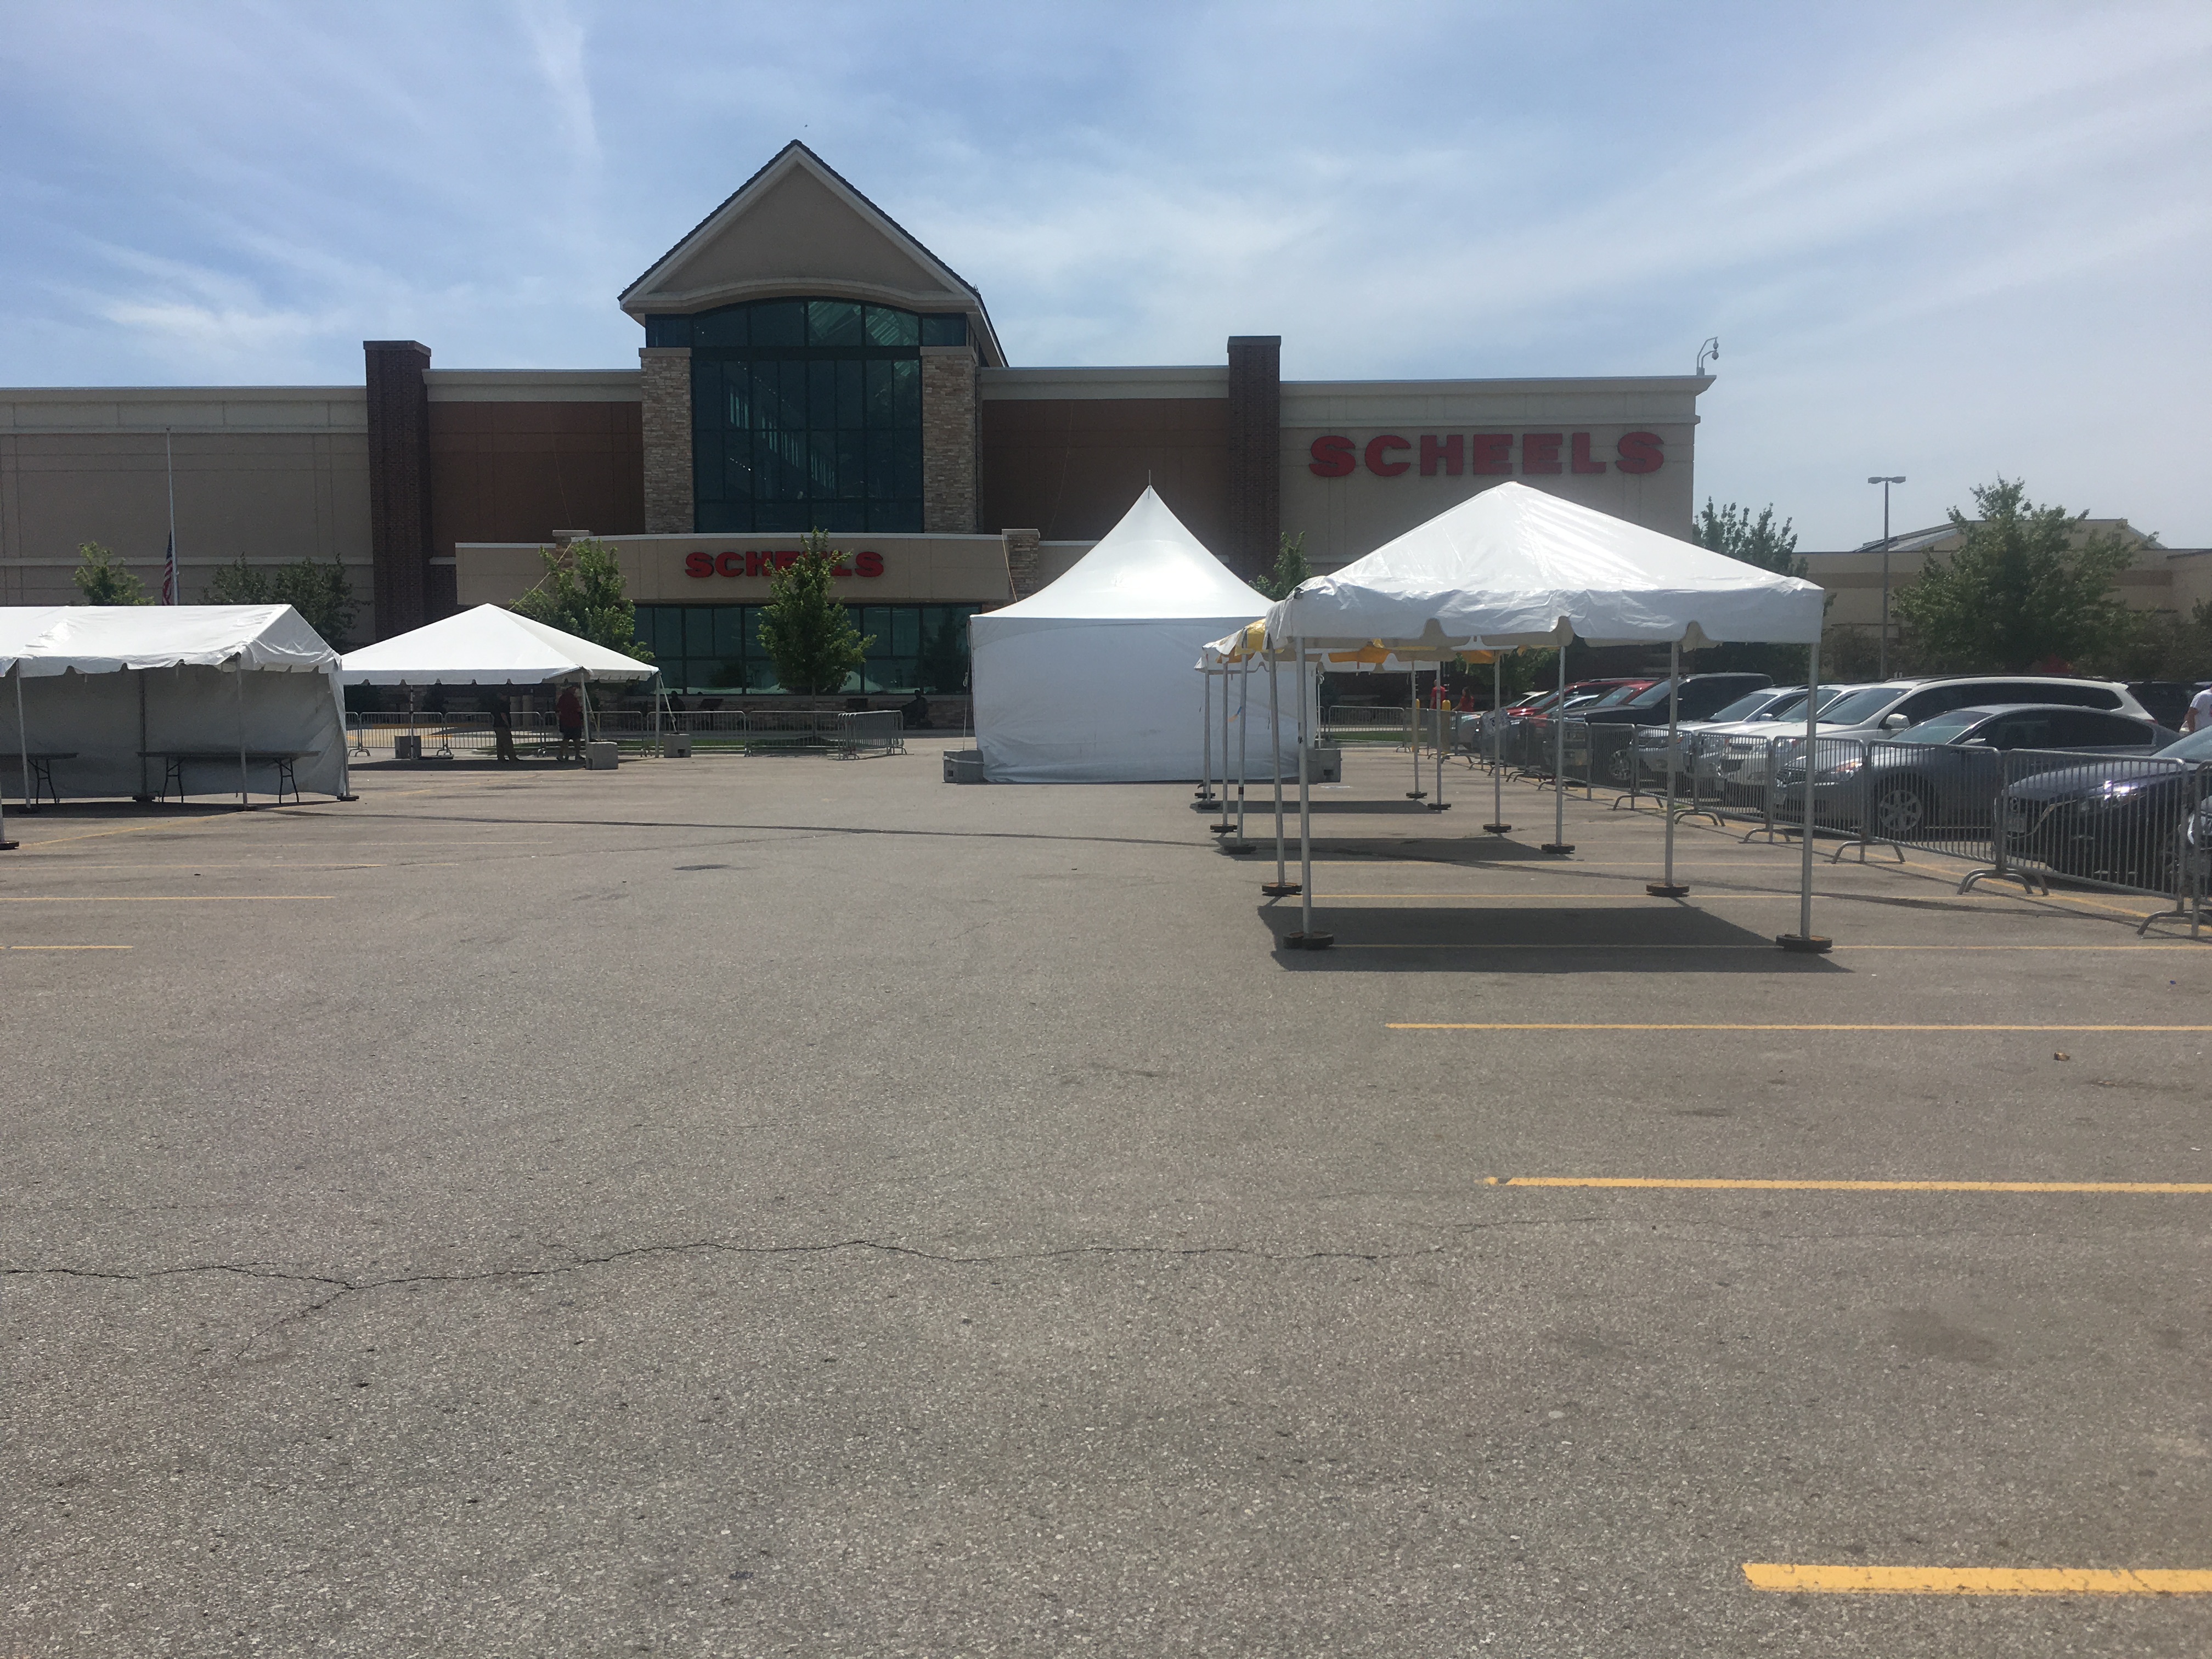 Frame tents setup at Scheels in Des Moines, Iowa